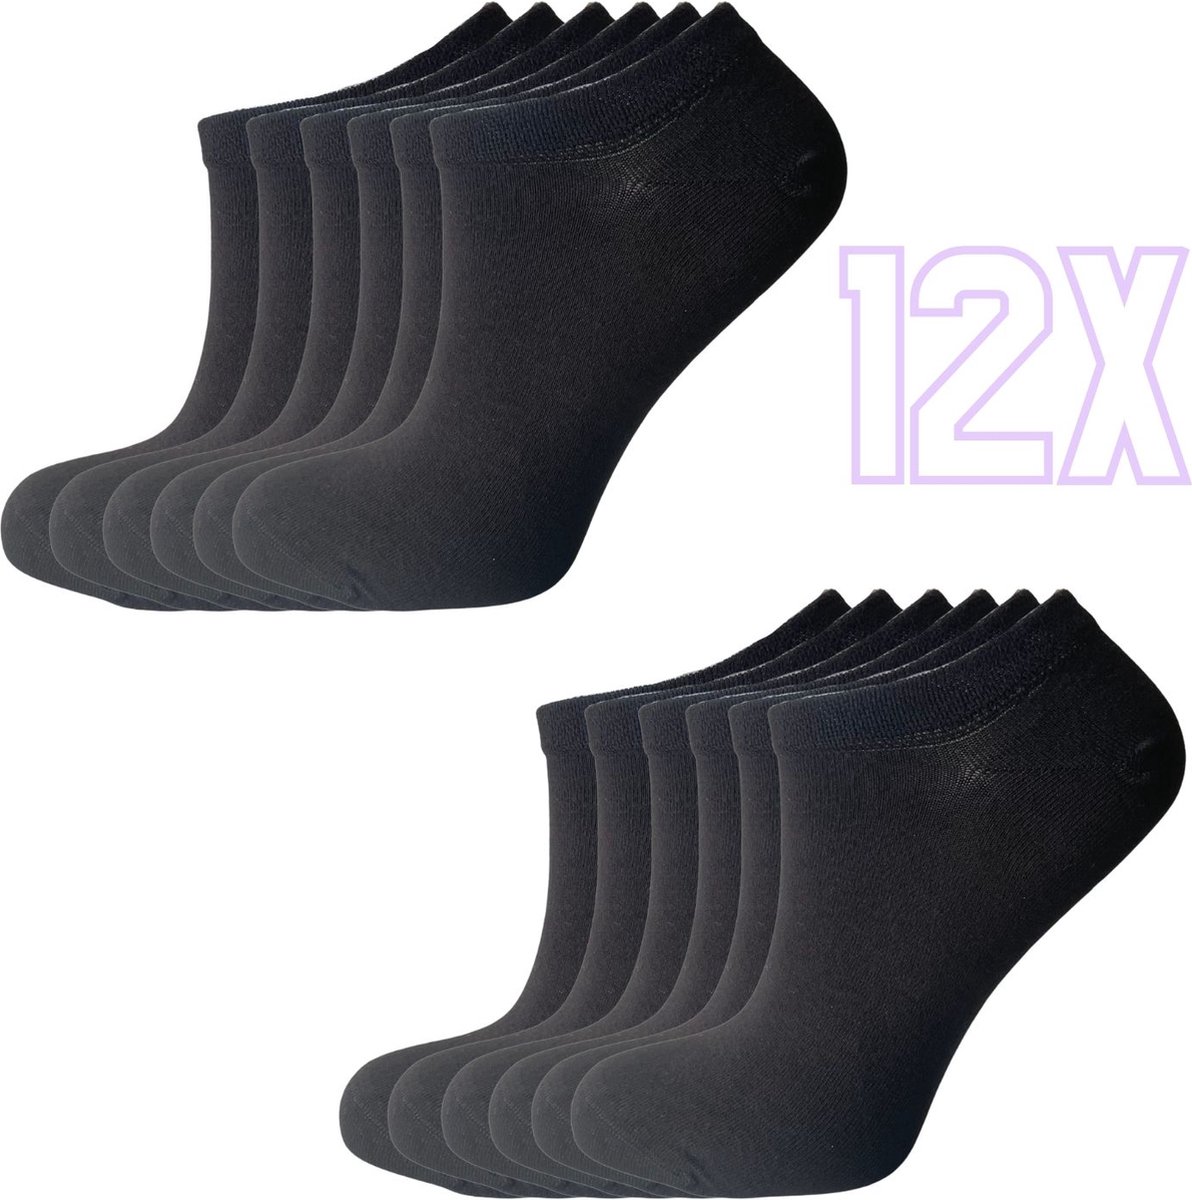 12x Bamboe Sneakersokken Naadloos - Unisex - 12 paar - Zwart - Maat 35-41 - Bamboe 84% - Sokken